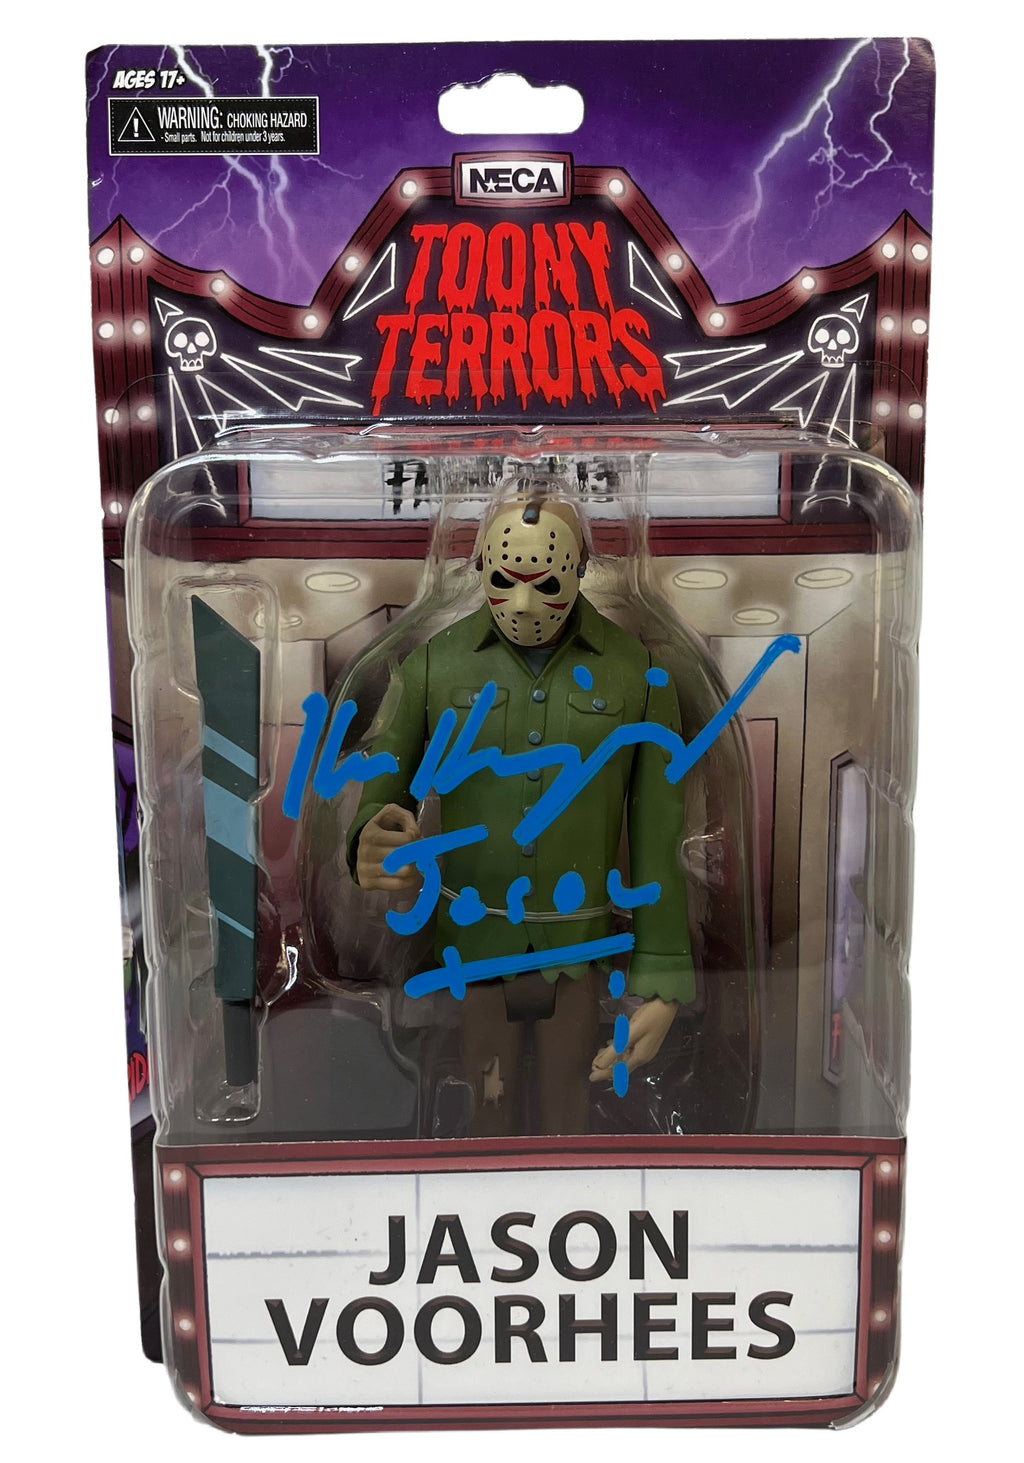 Ken Kirzinger autographed signed inscribed action figure JSA Freddy vs. Jason